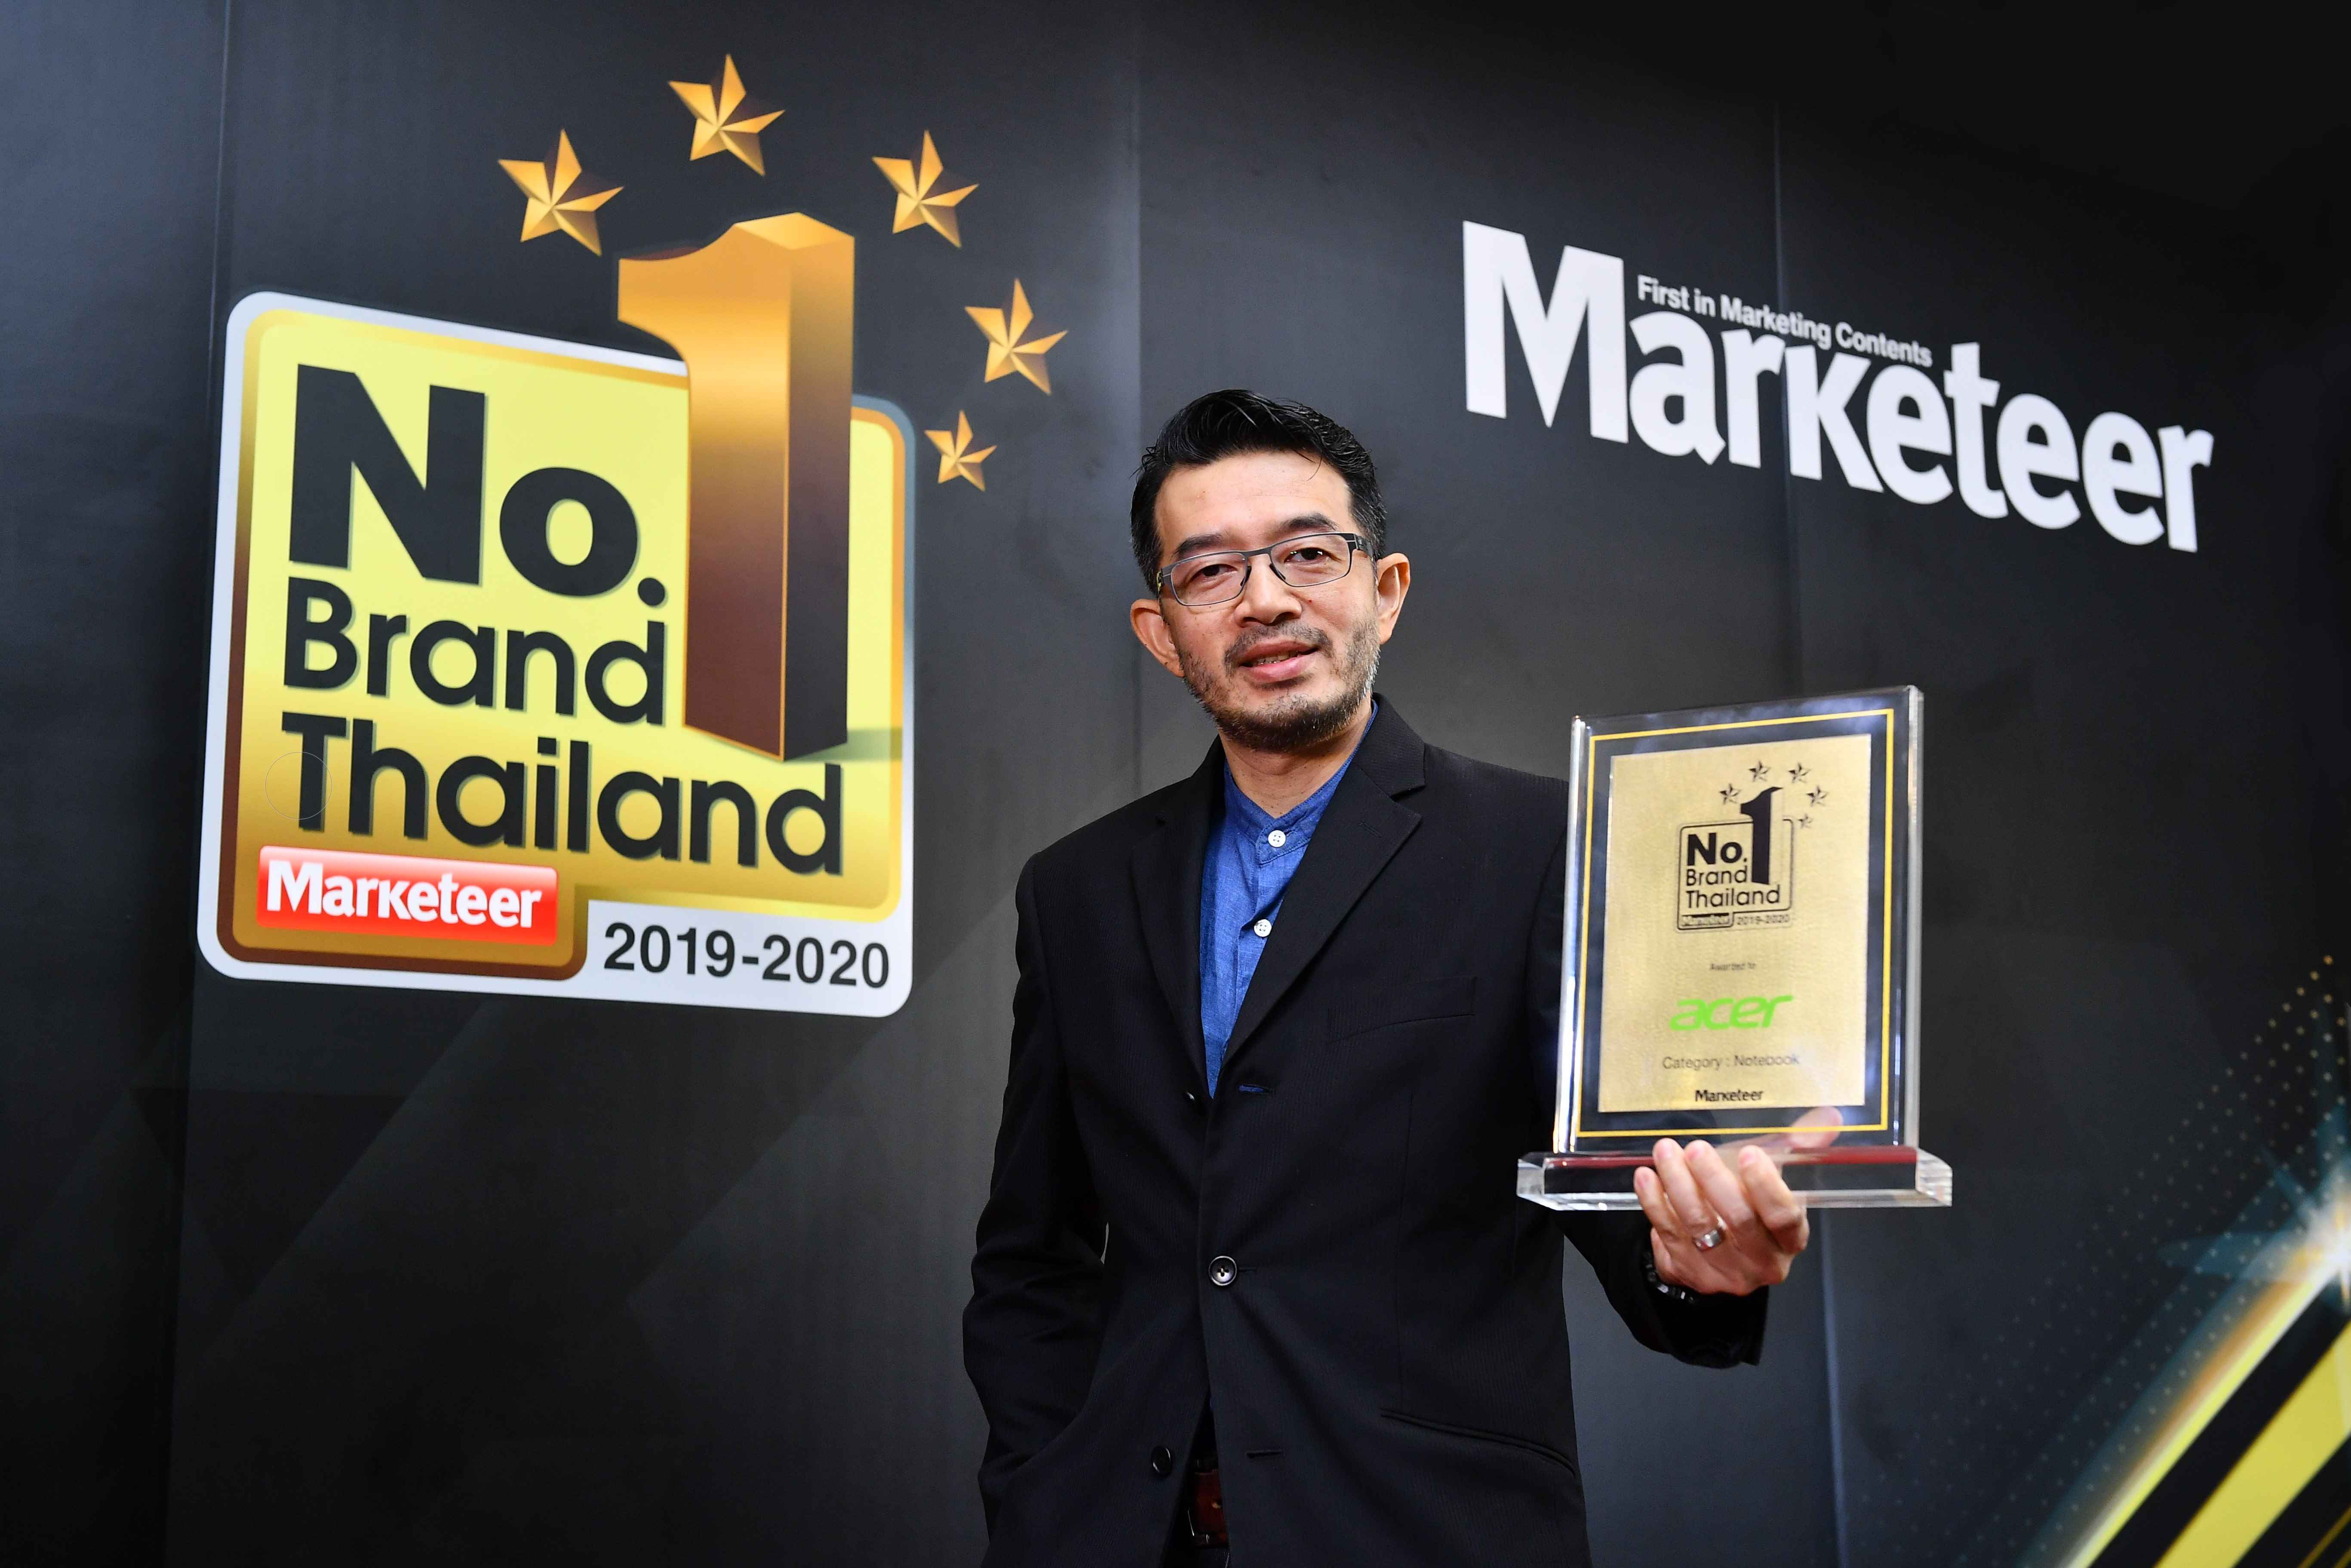 อีกครั้งกับรางวัลแห่งความภาคภูมิใจ ที่ได้รับติดต่อกันเป็นปีที่ 9 เอเซอร์ คว้าแบรนด์ยอดนิยมอันดับ 1 ของประเทศไทย ในหมวดแบรนด์โน้ตบุ๊ค